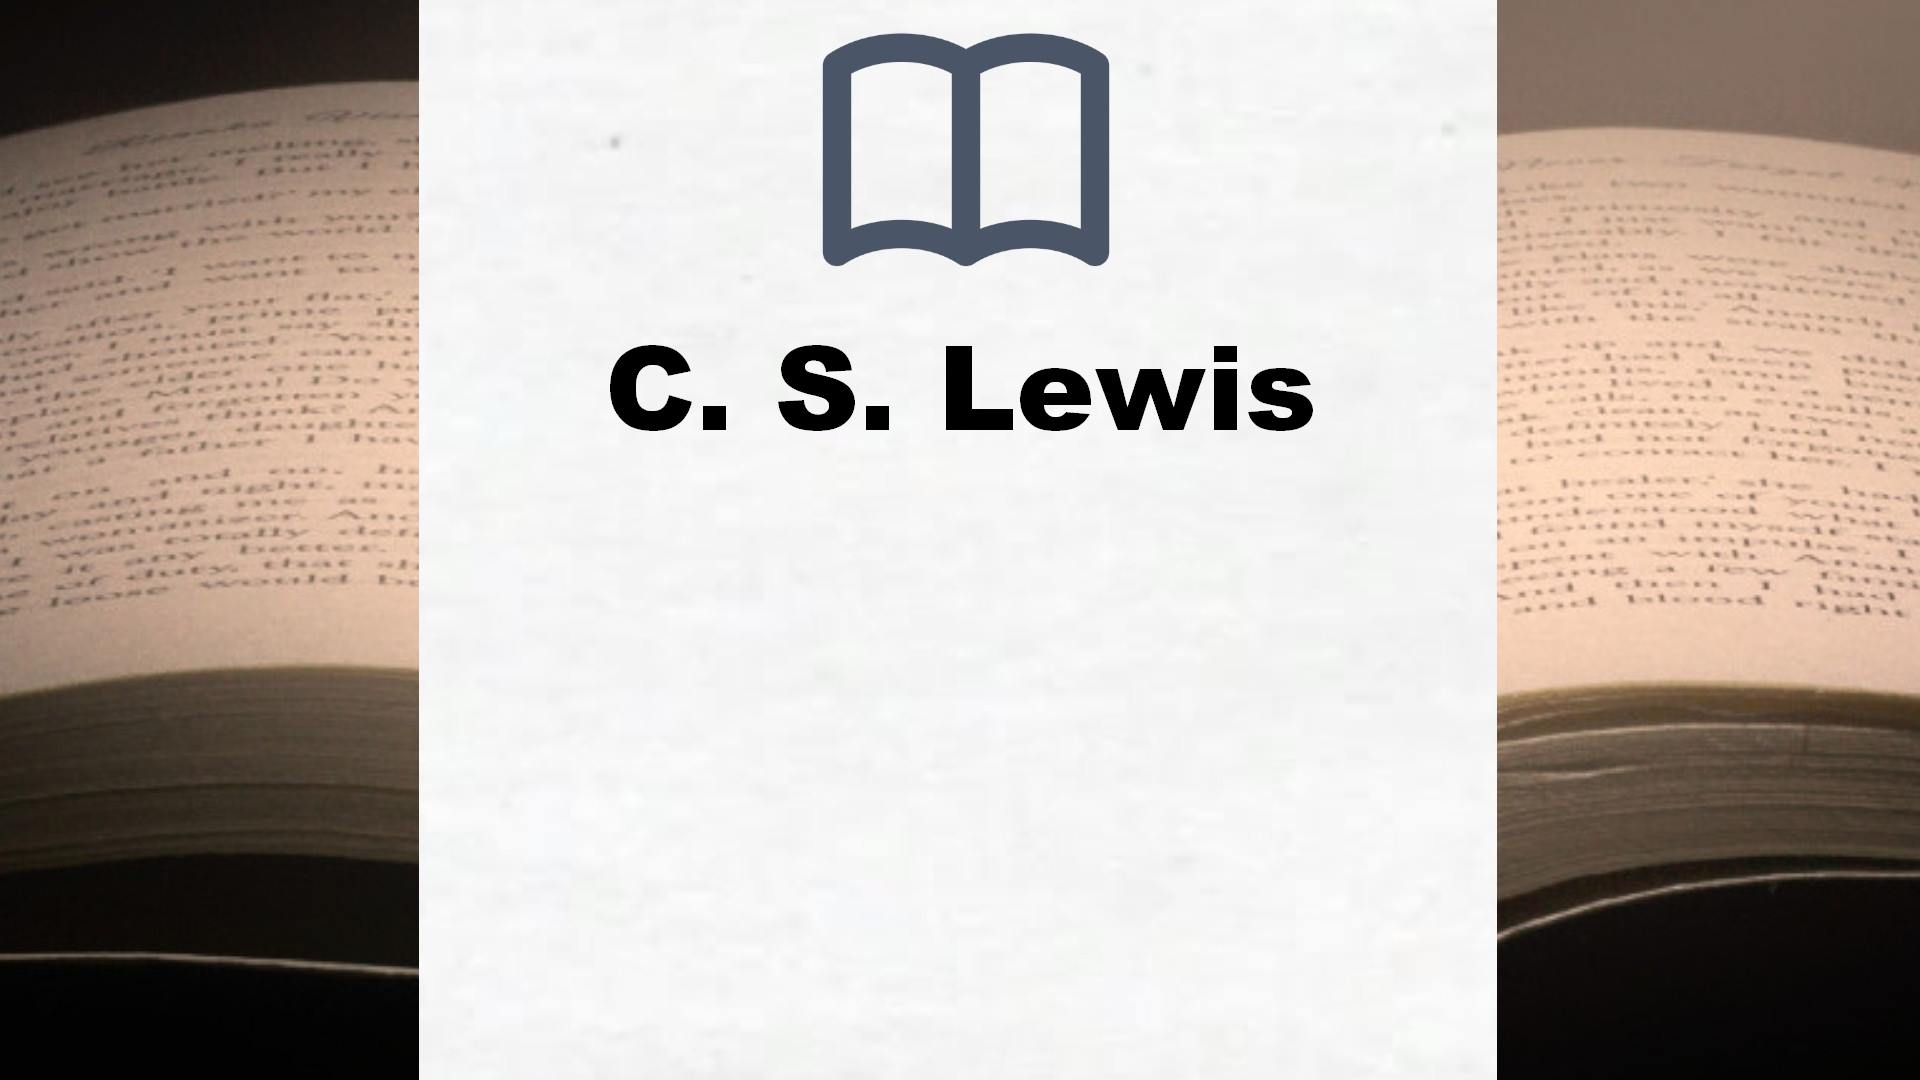 Bücher über C. S. Lewis